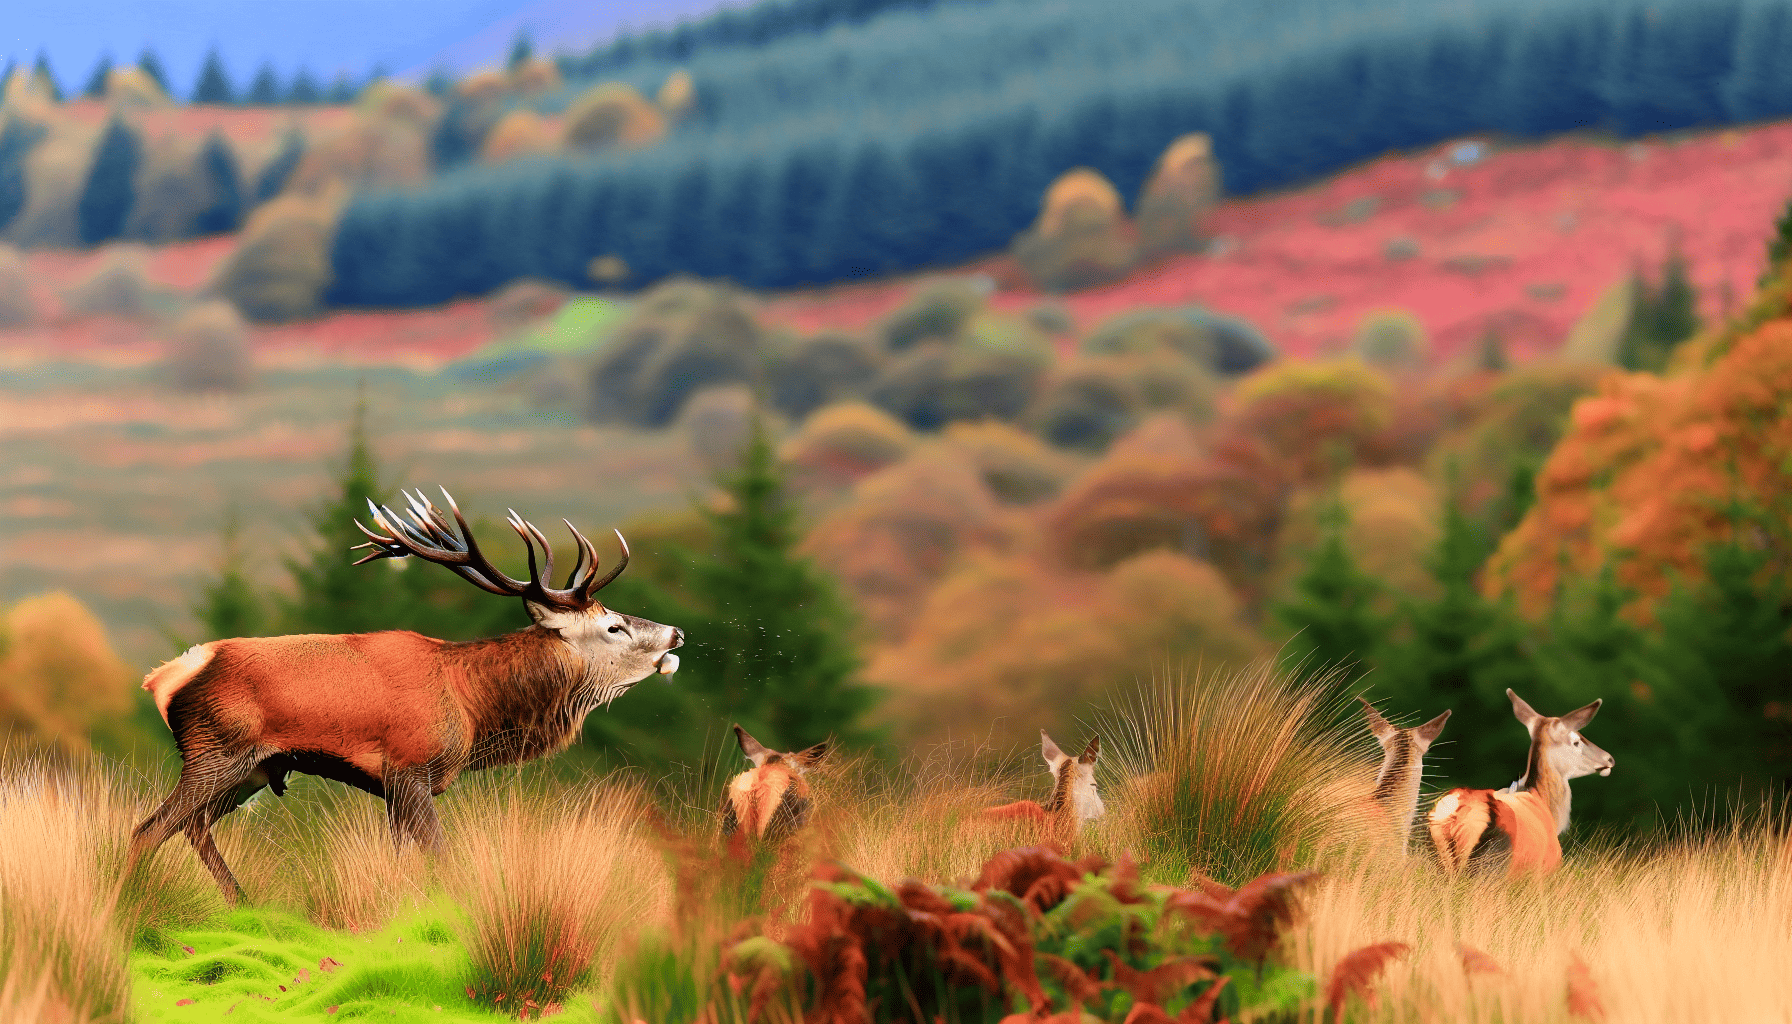 Red deer rutting in Ireland